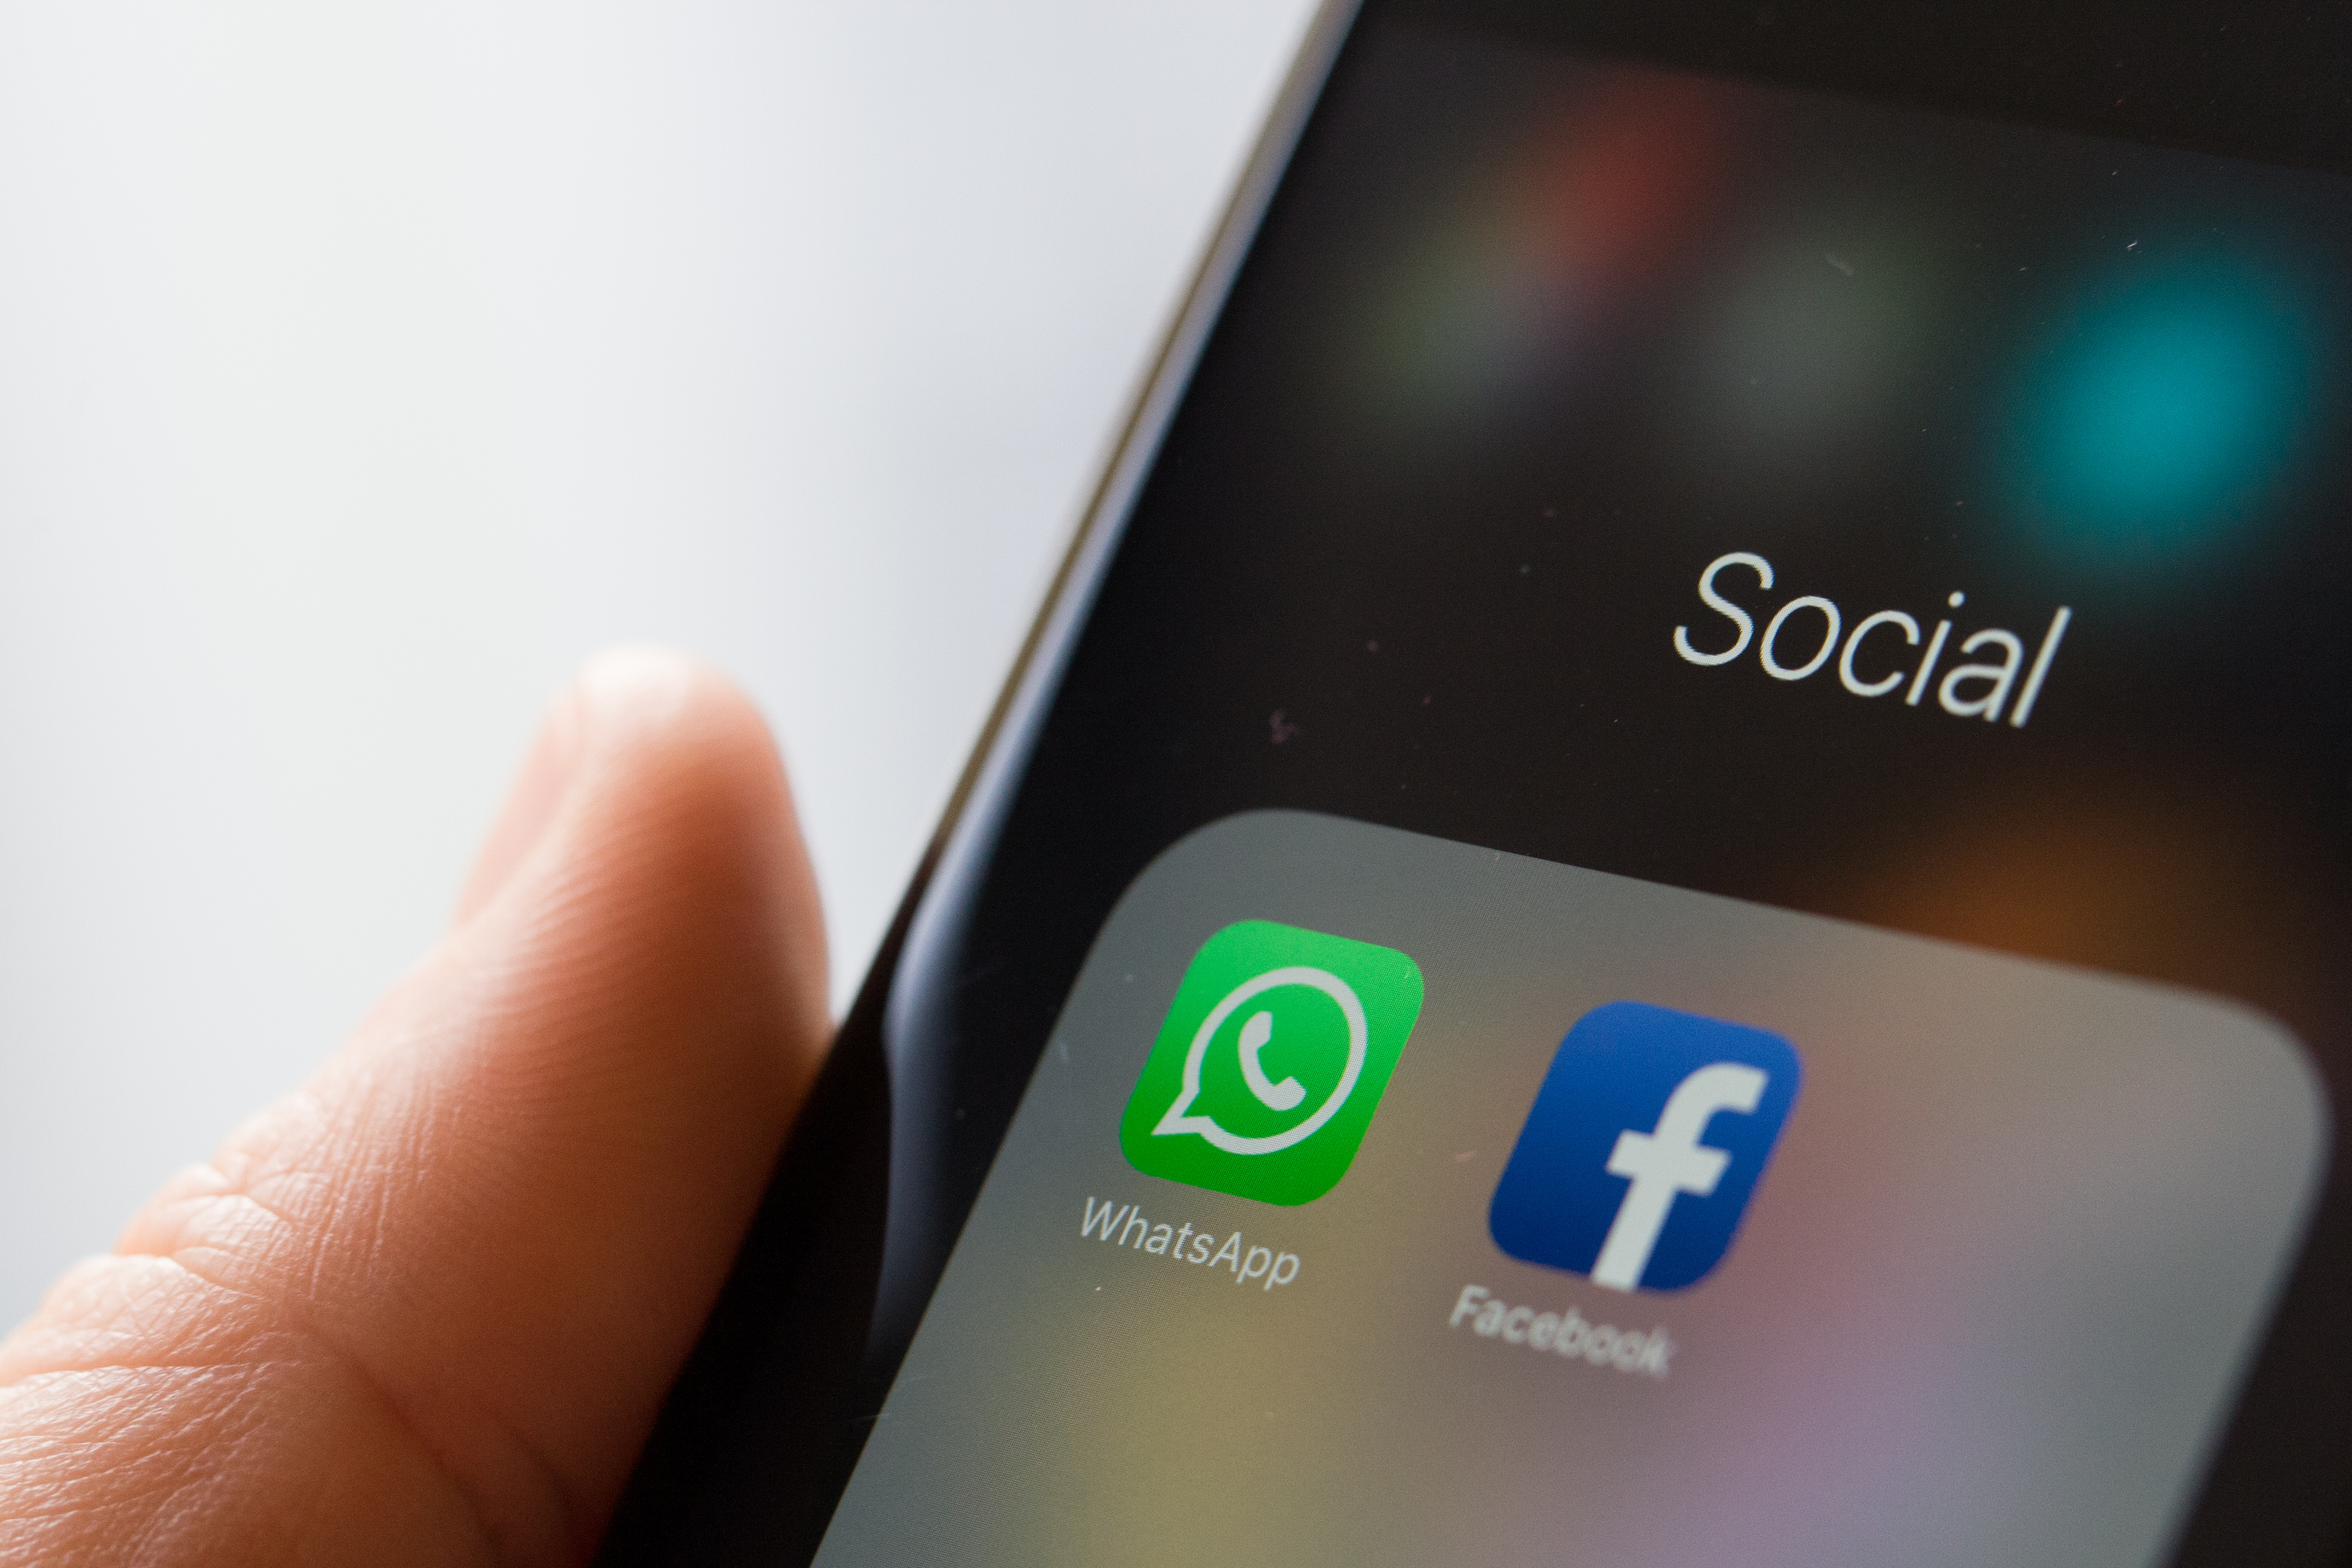 Korlátozza az üzenetek továbbküldését a Whatsapp az álhírek megfékezése érdekében